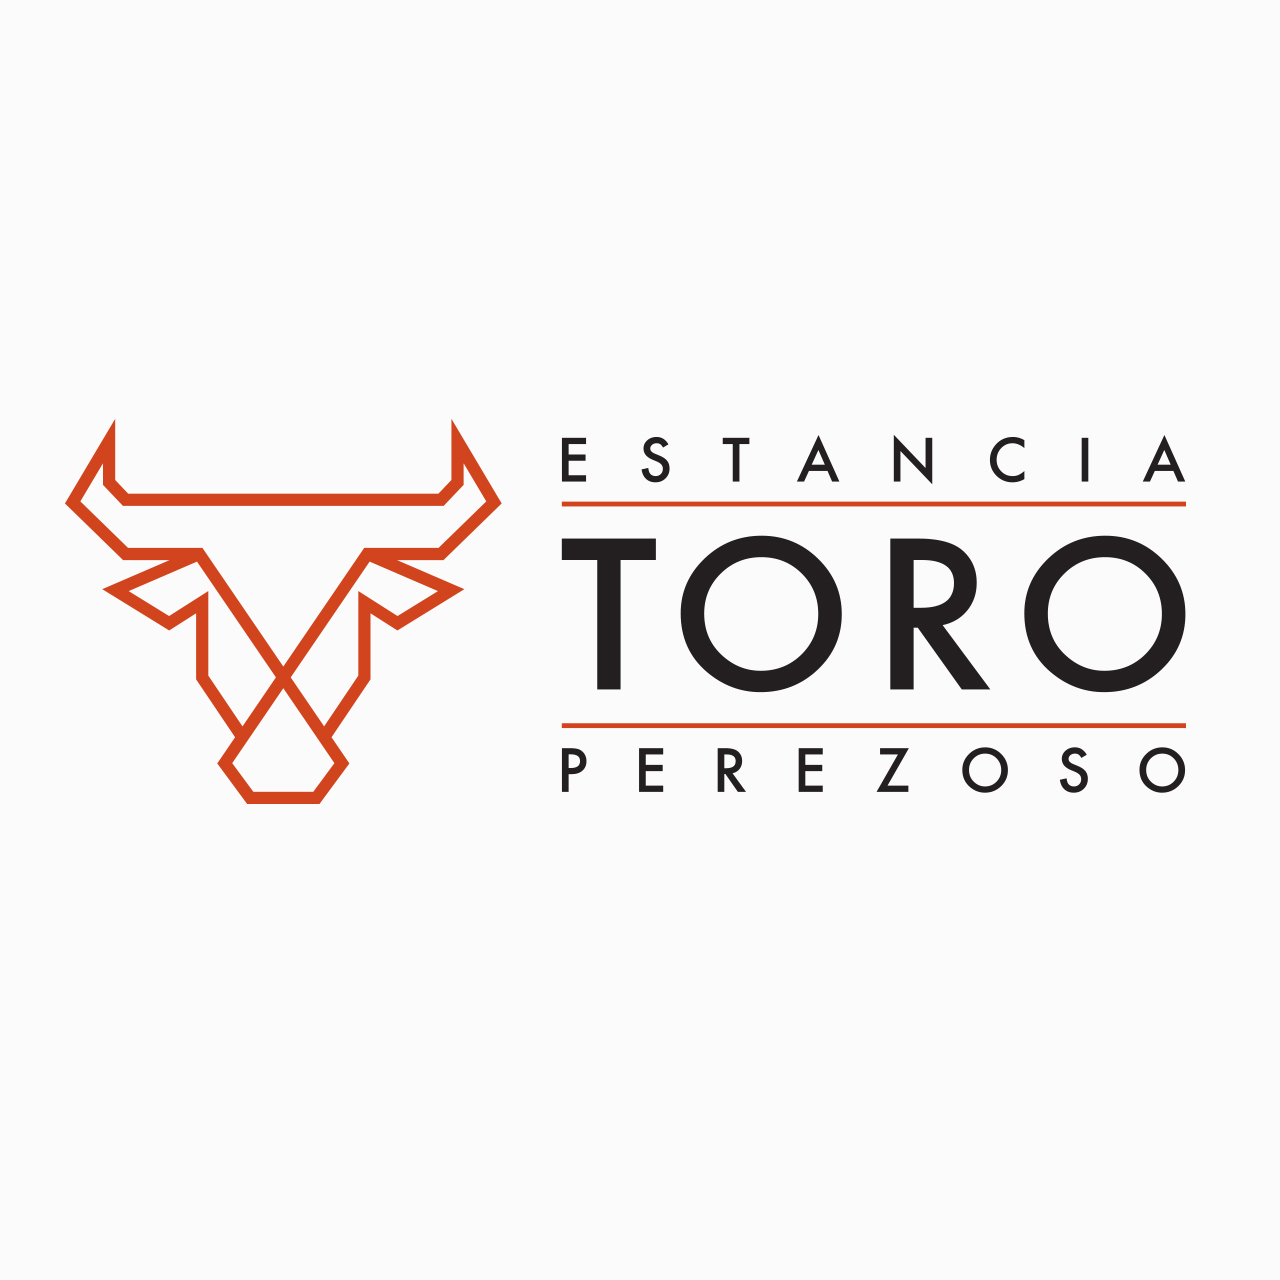 Logo design and type treatment for Estancia Toro Perezoso Residential Community